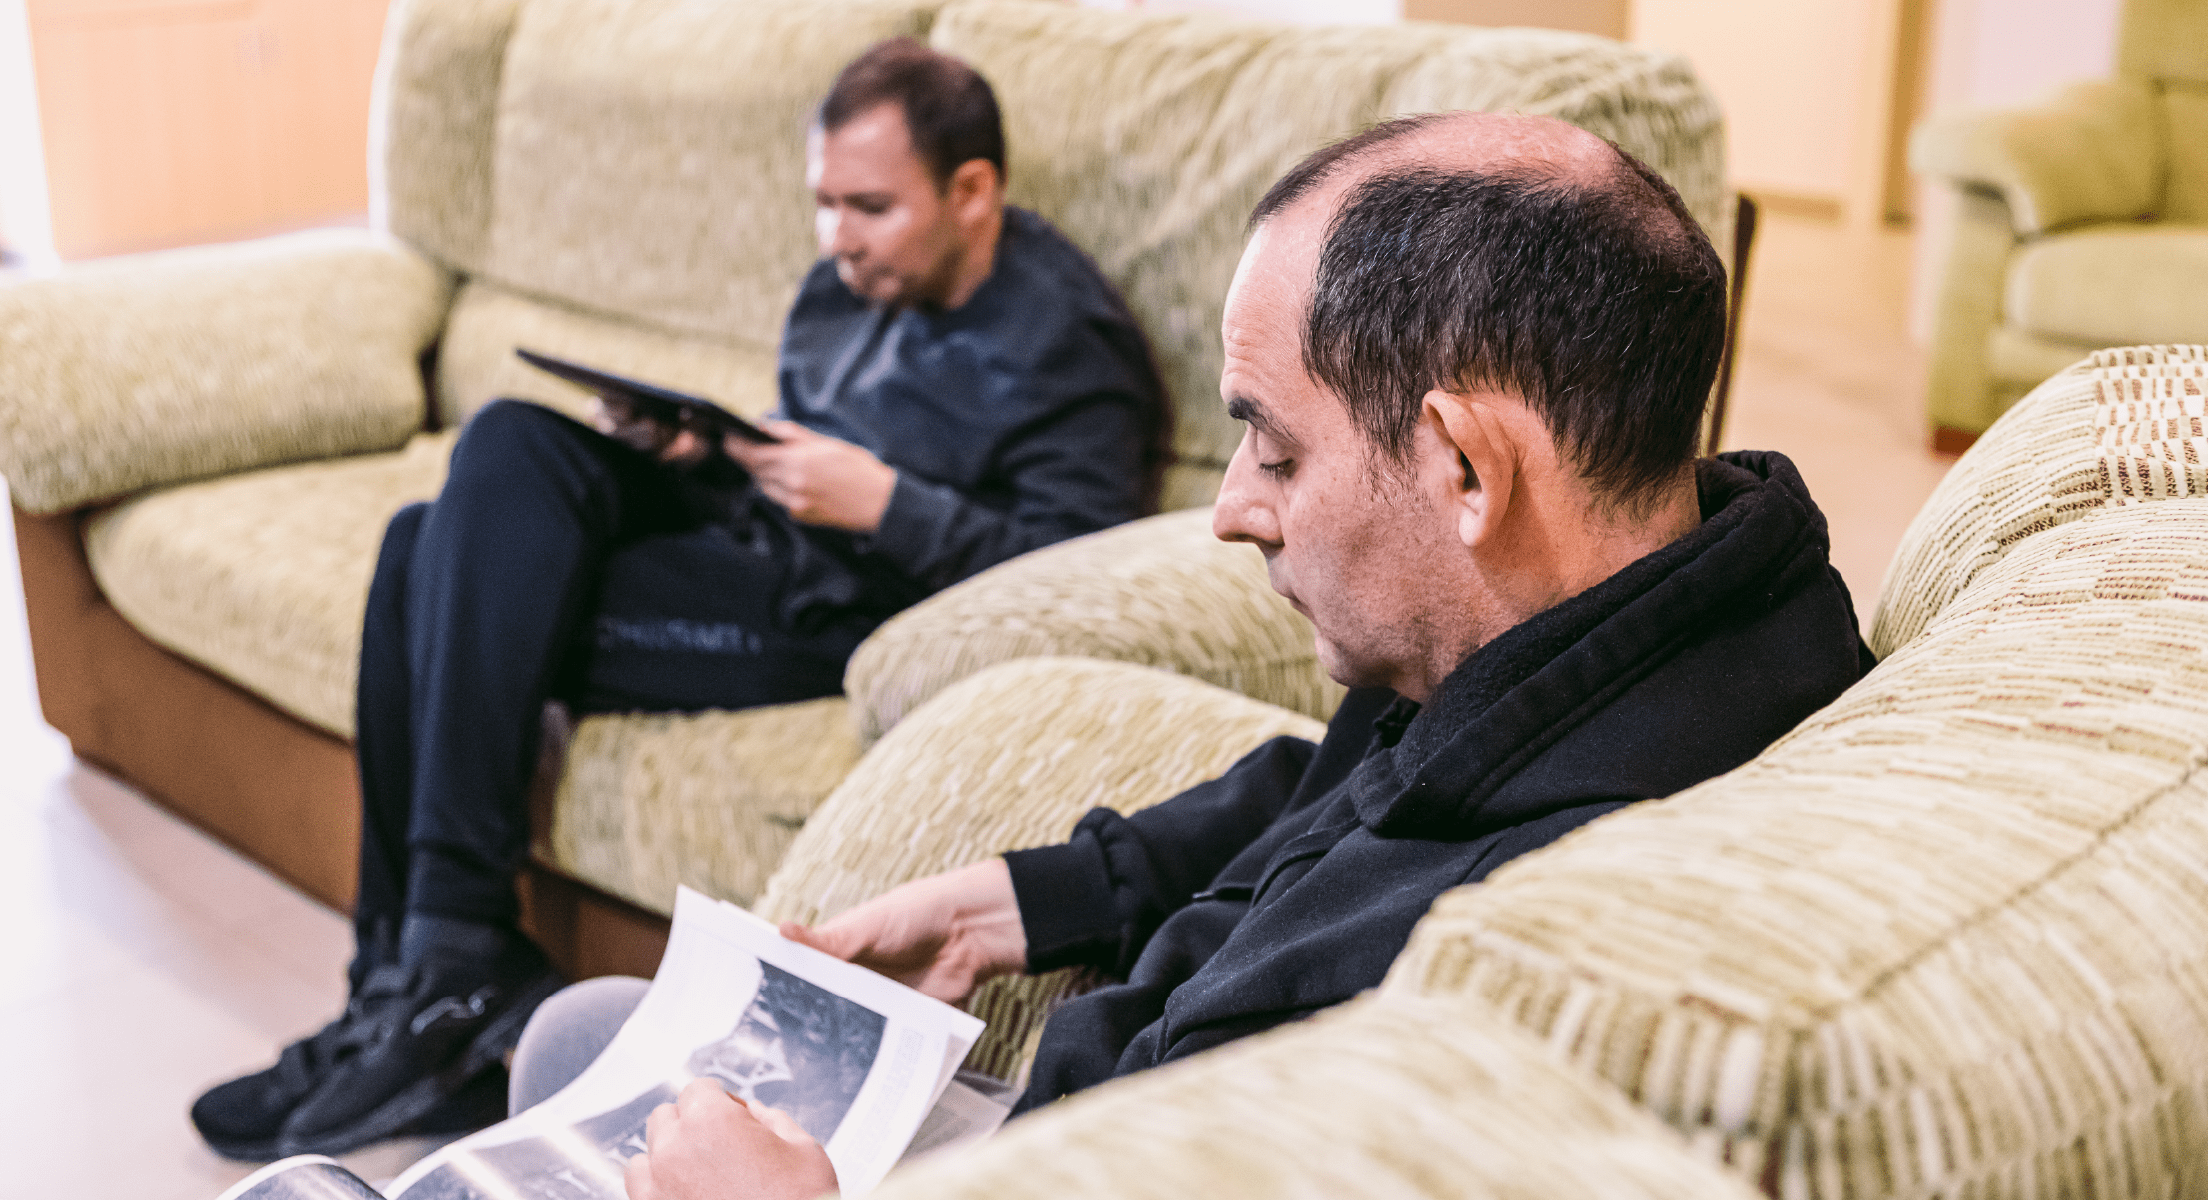 Dos adultos sentados en el sofa mirando una revista y su tablet.